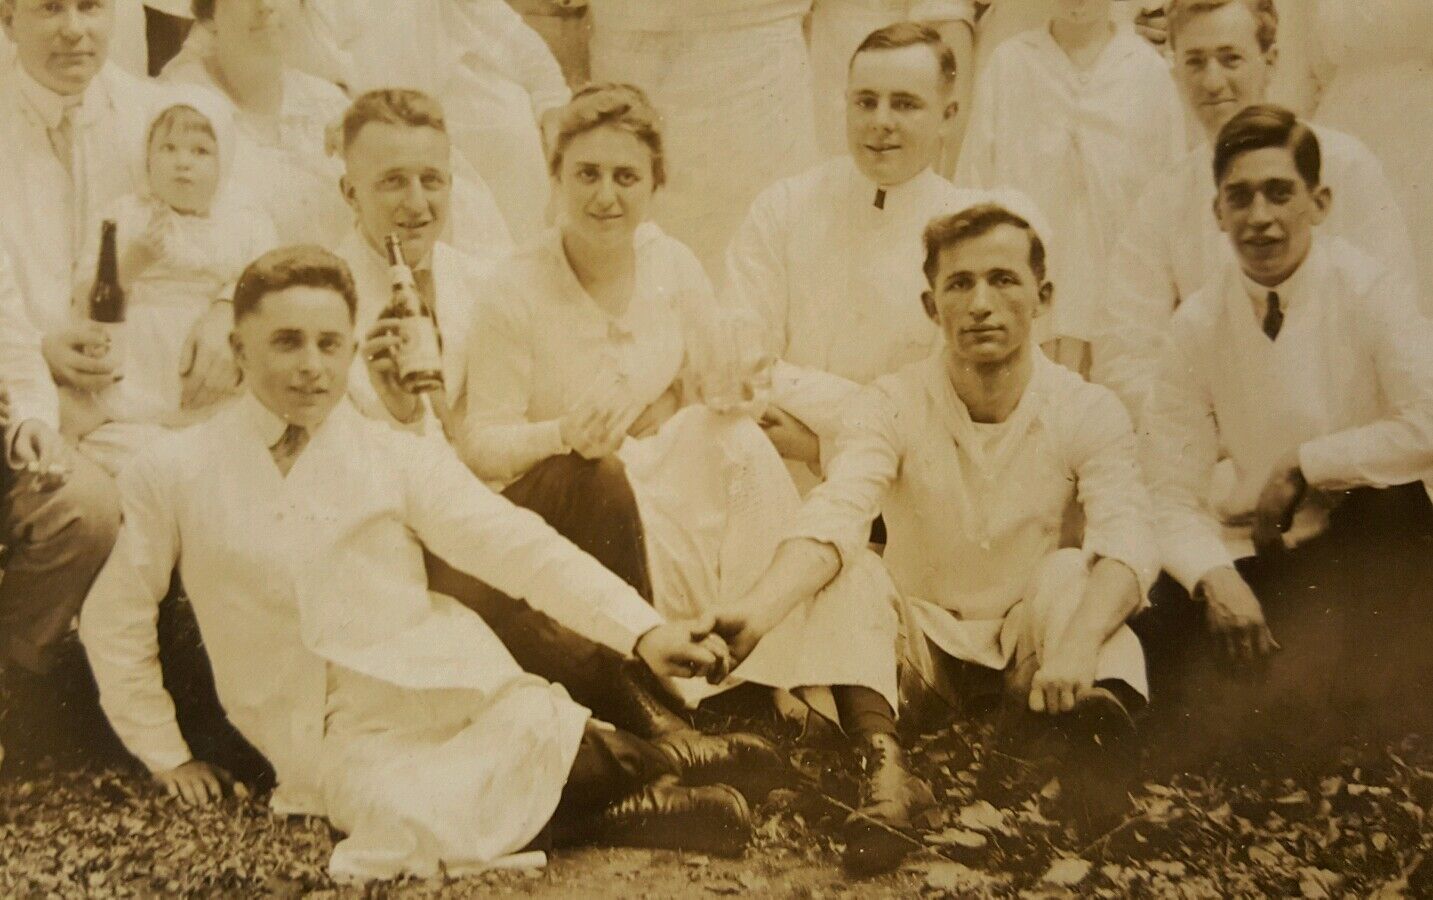 ANTIQUE 1915 WHALOM AMUSEMENT PARK REPUBLICAN PARTY LUNENBURG MA MEN TLC PHOTO 